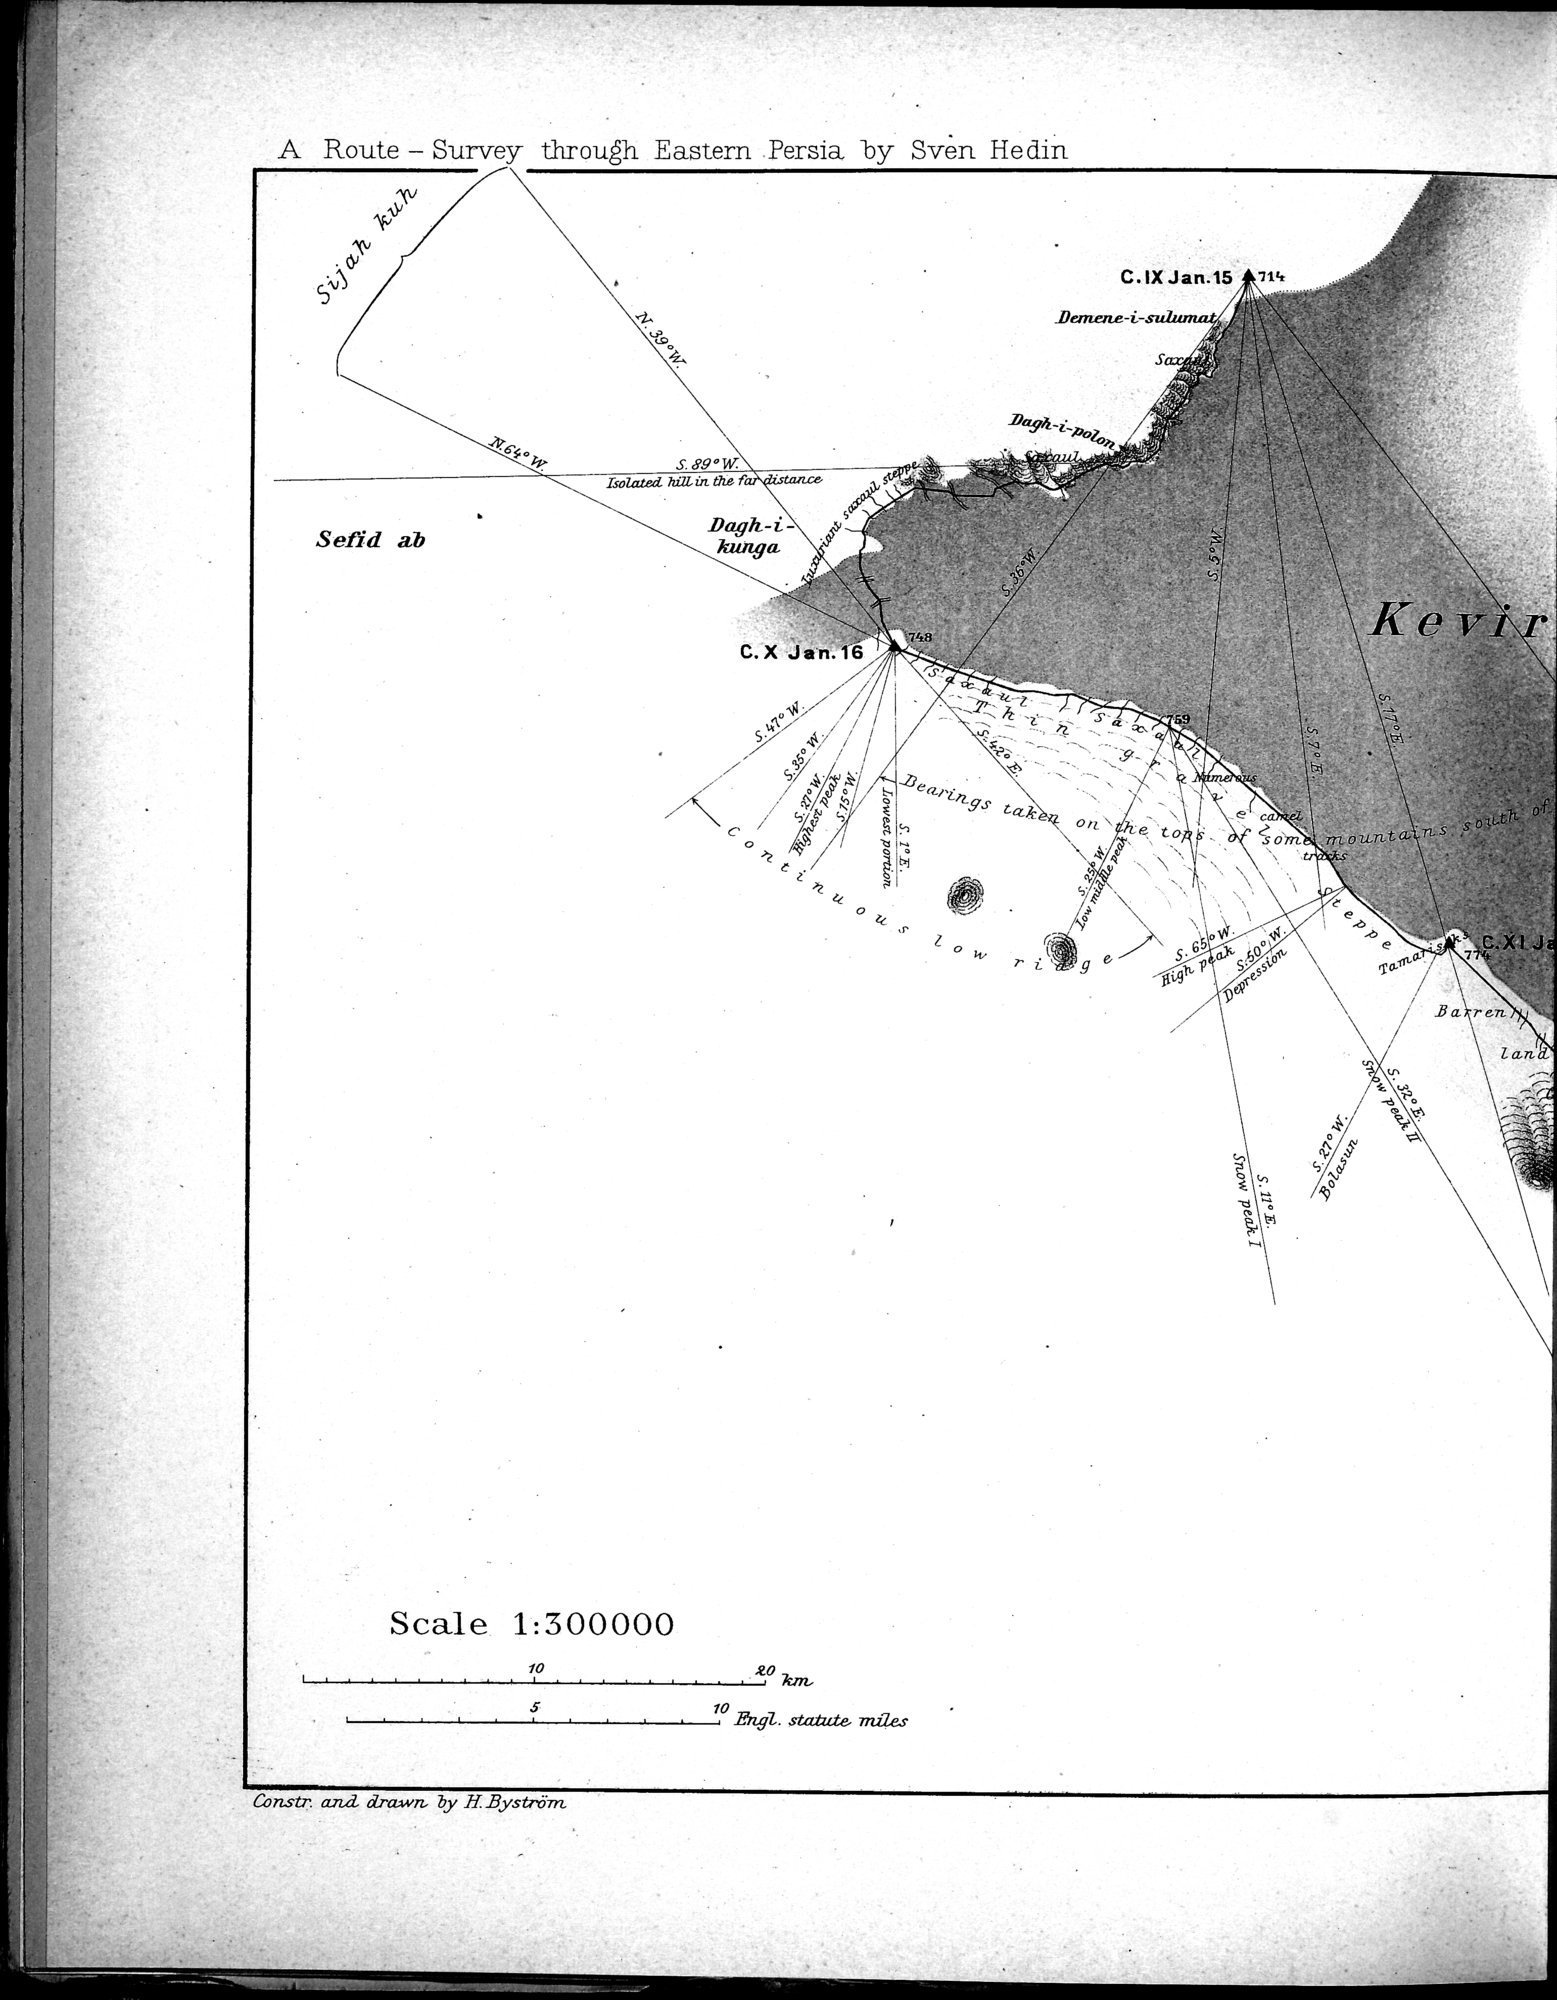 Eine Routenaufnahme durch Ostpersien : vol.1 / Page 40 (Grayscale High Resolution Image)